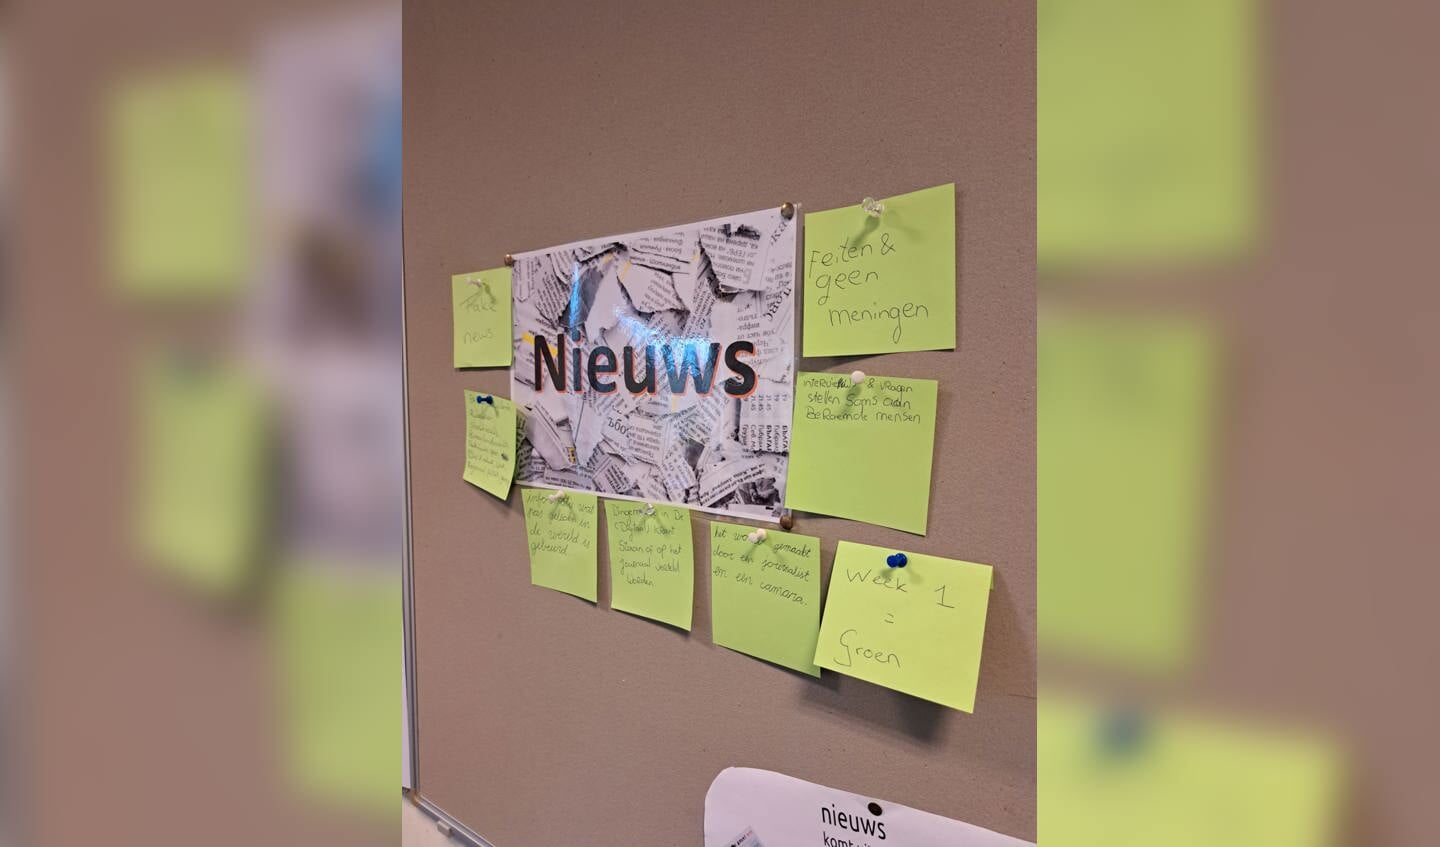 De leerlingen van groep 7 en 8 van basisschool de Stokland hebben de afgelopen 4 weken gewerkt aan het thema ‘nieuws’.